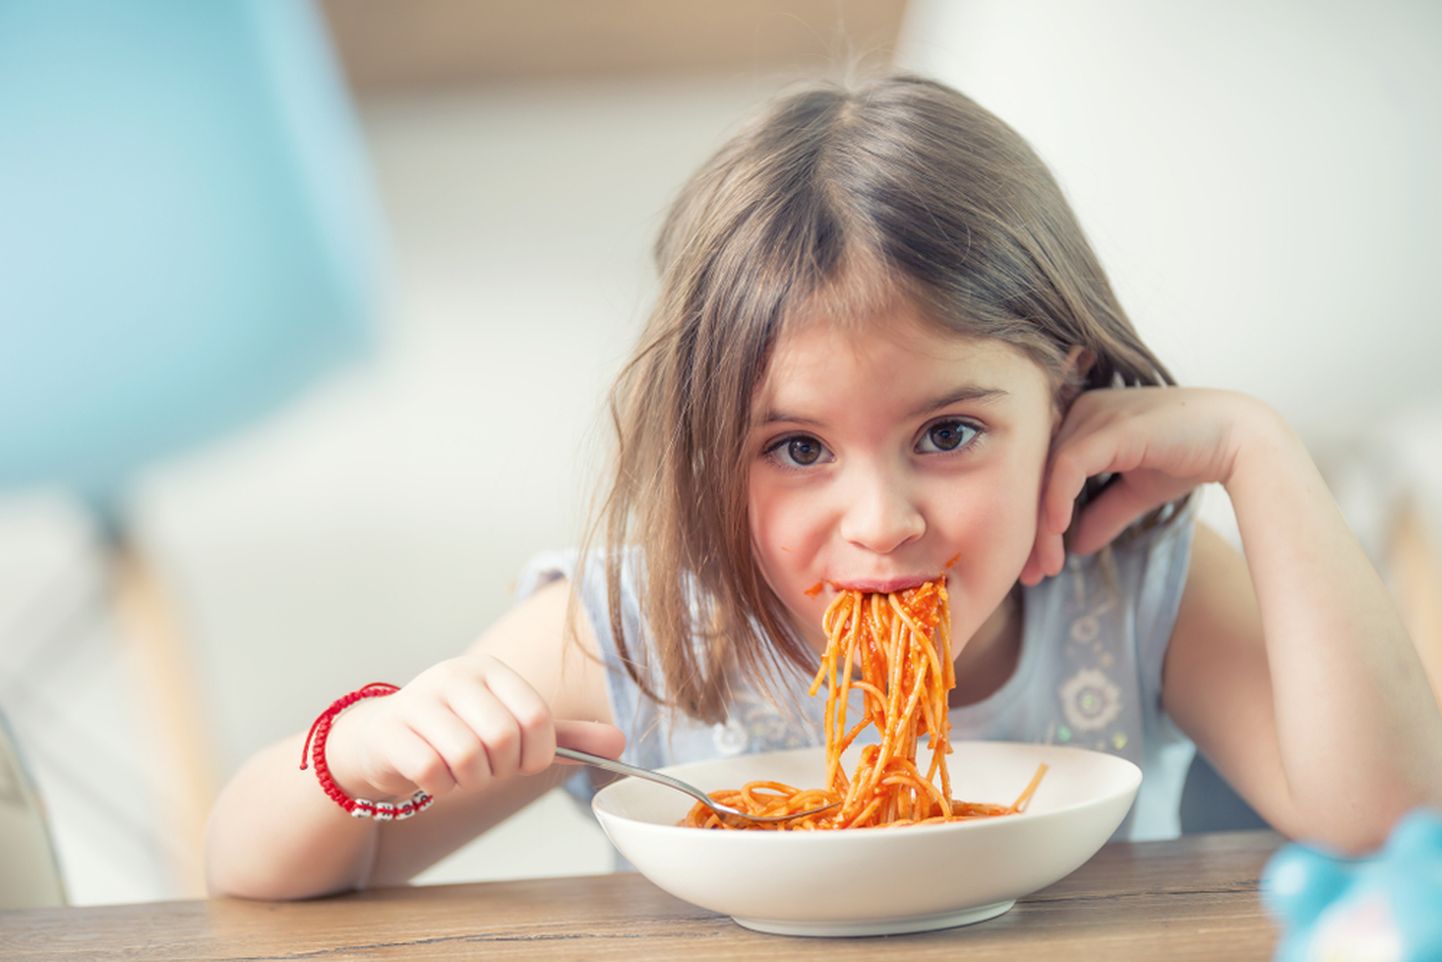 Laps sööb spagette. Pildil on illustratiivne tähendus.